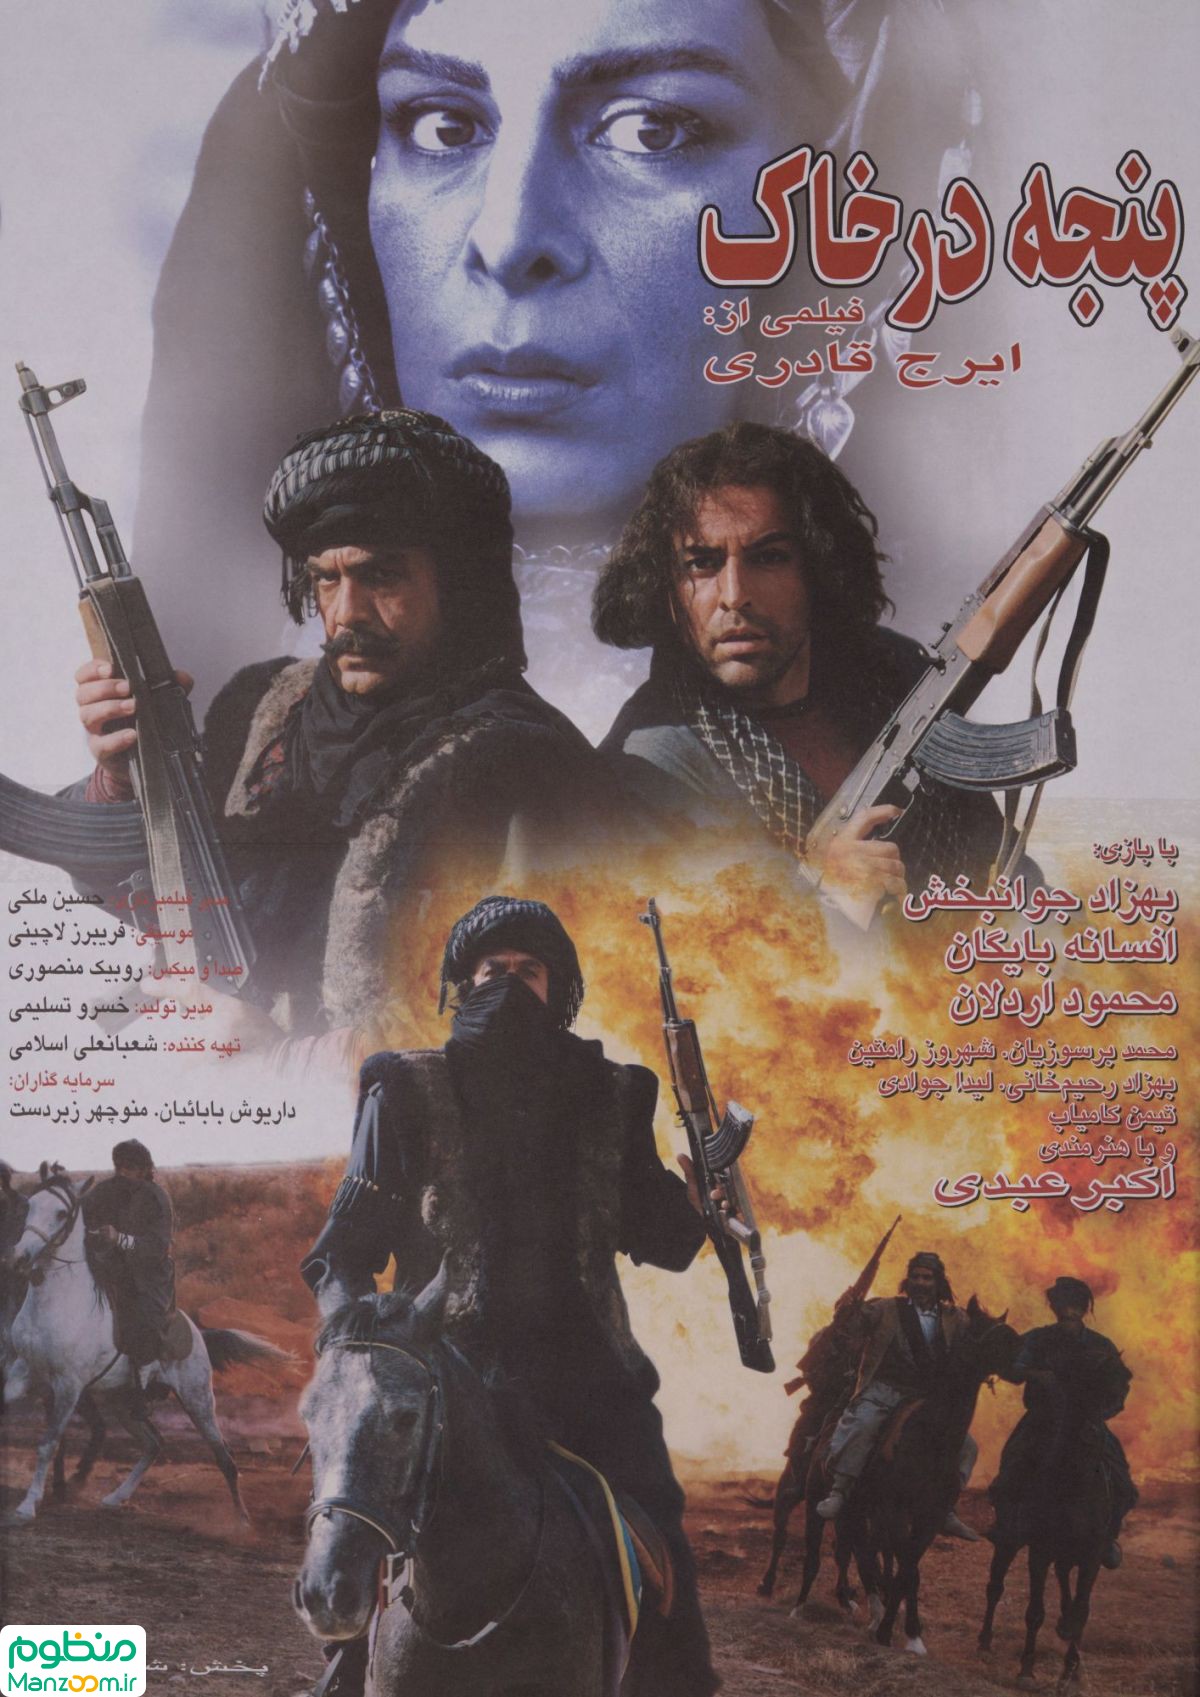  فیلم سینمایی پنجه در خاک به کارگردانی ایرج قادری